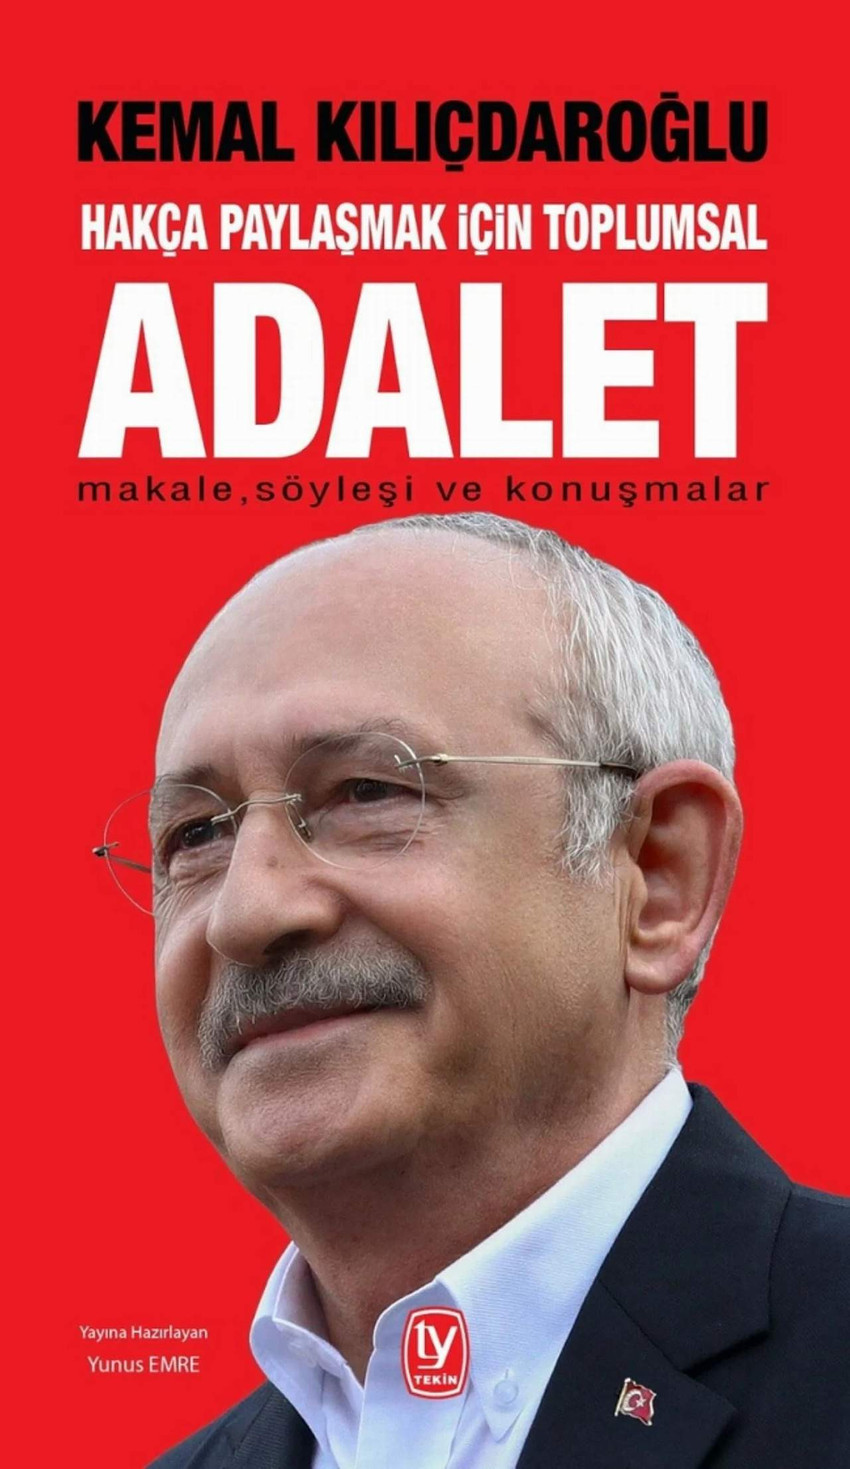 Millet İttifakı Cumhurbaşkanı adayı ve CHP Genel Başkanı Kemal Kılıçdaroğlu’nun yeni kitabı “Hakça Paylaşmak İçin Toplumsal Adalet” Tekin Yayınevi tarafından yayımlandı.